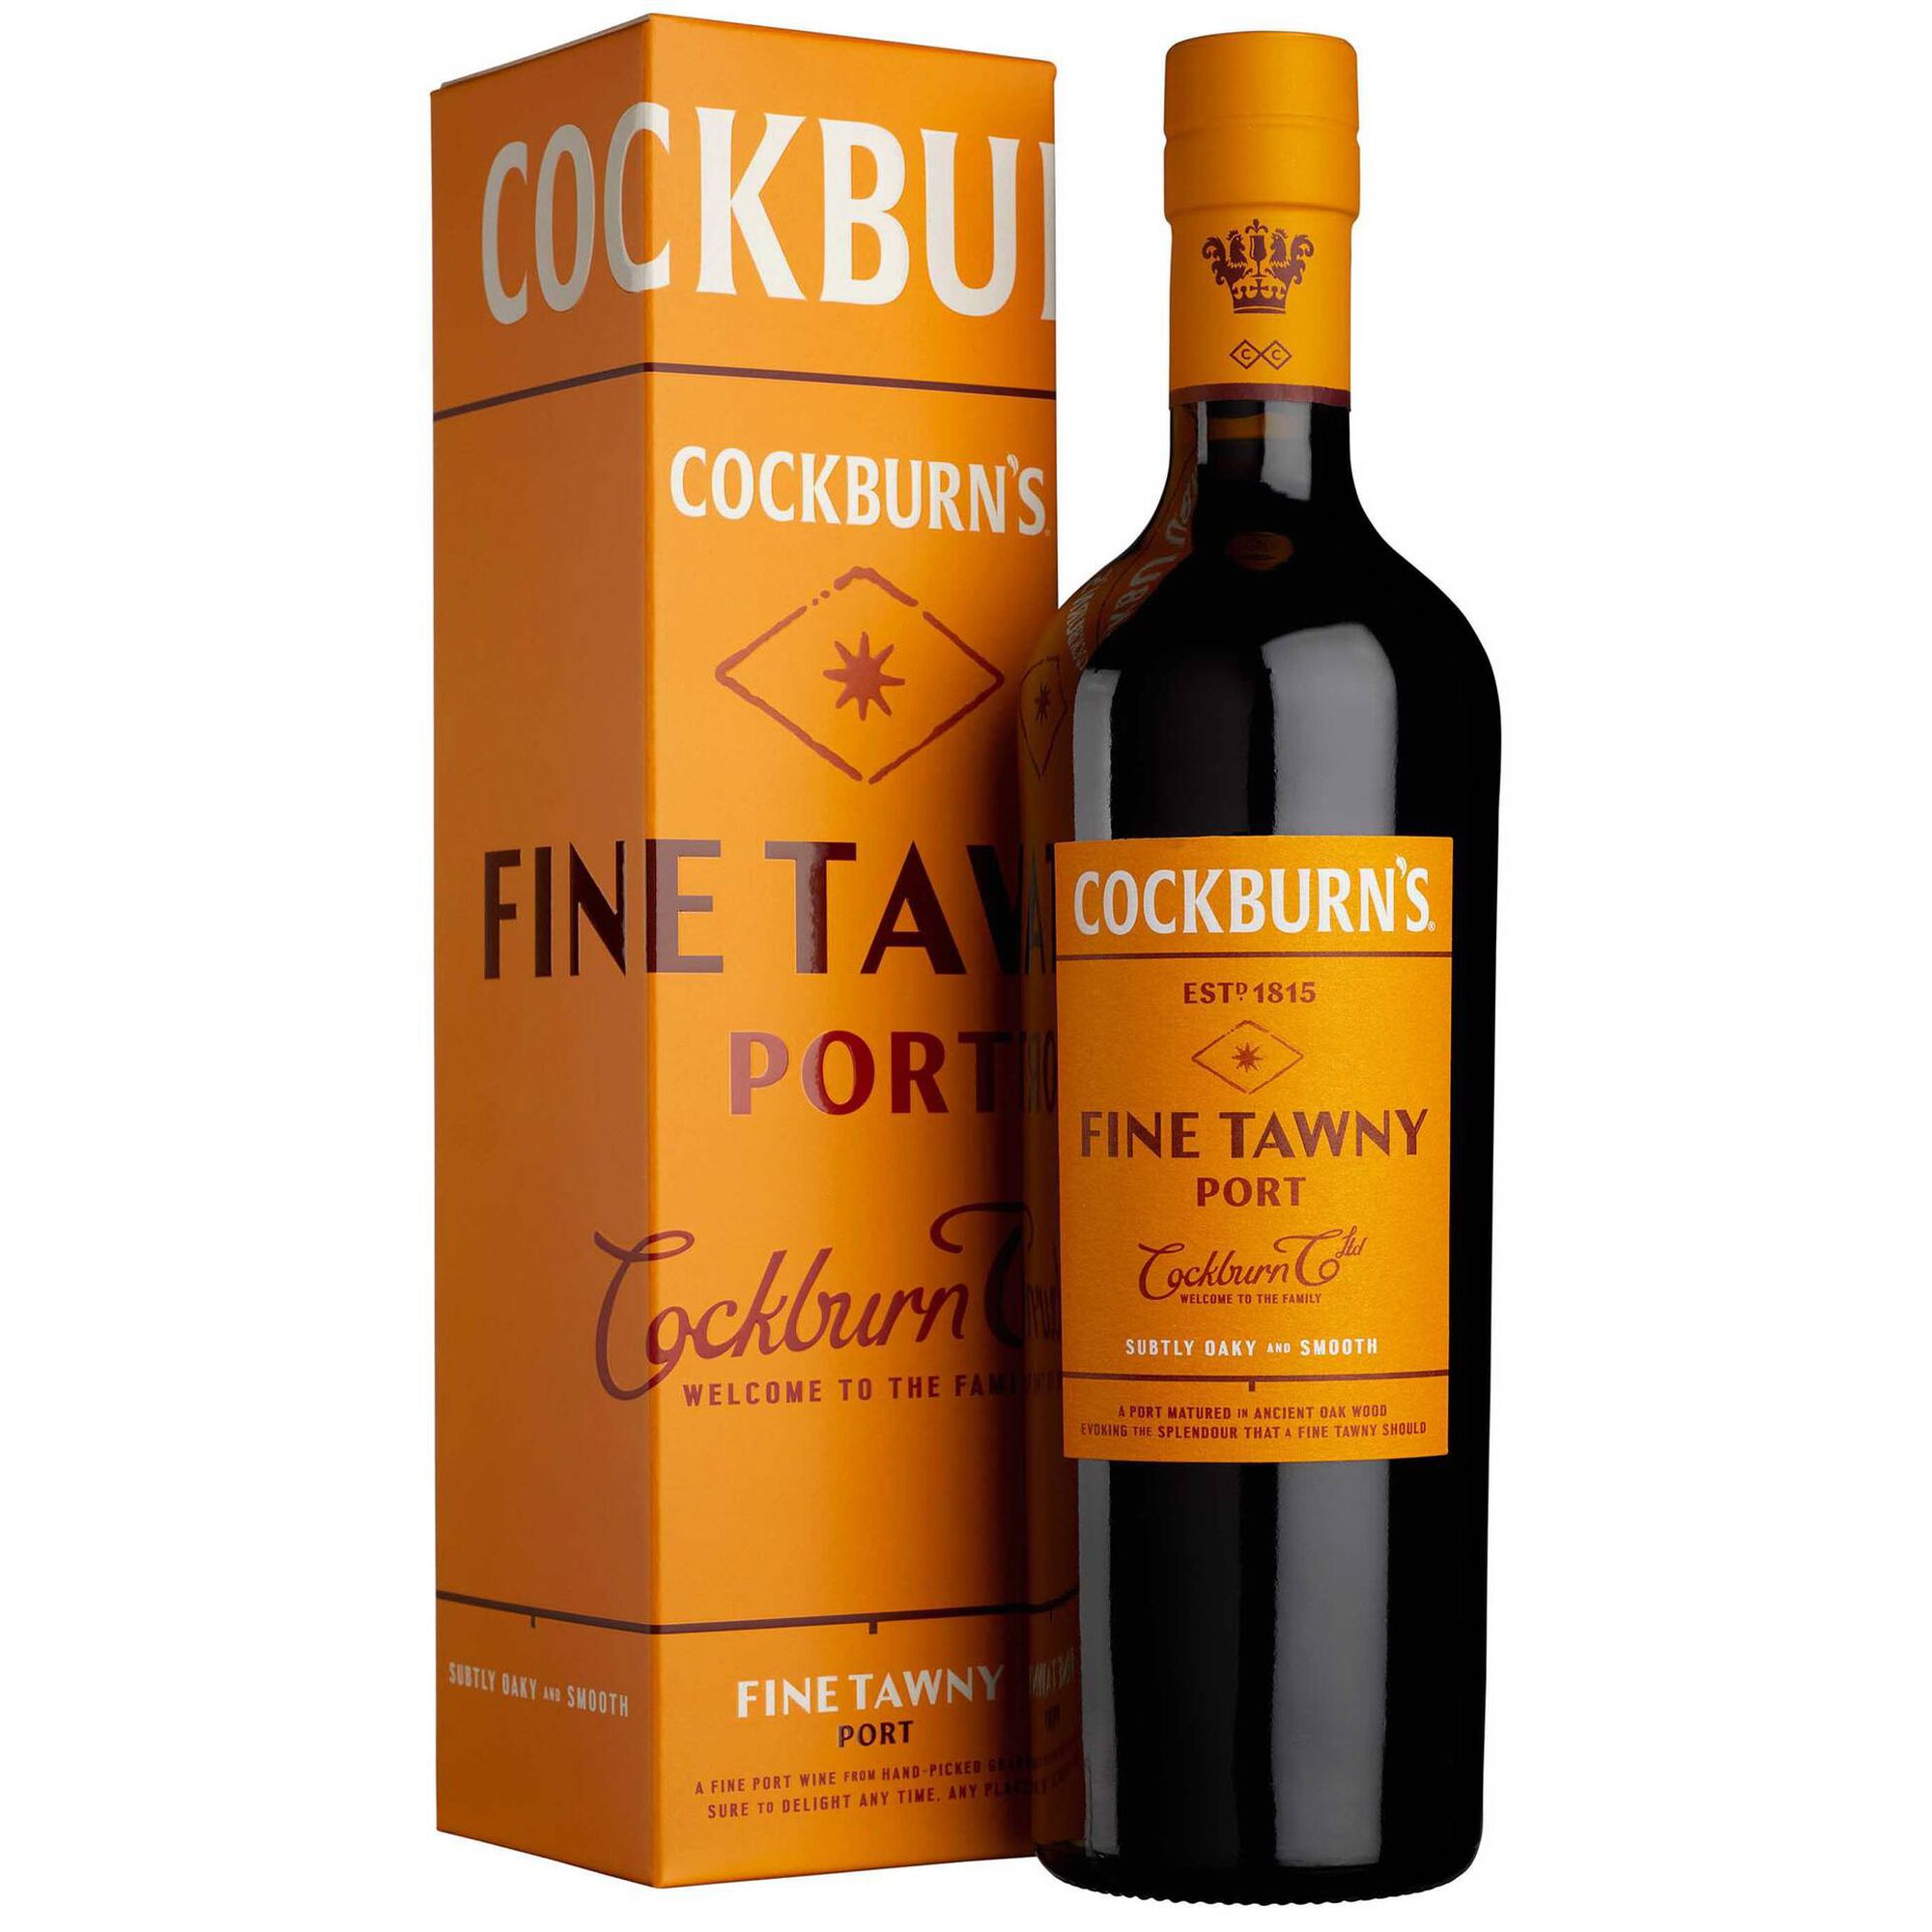 Cockburn's Vinho do Porto Fine Tawny